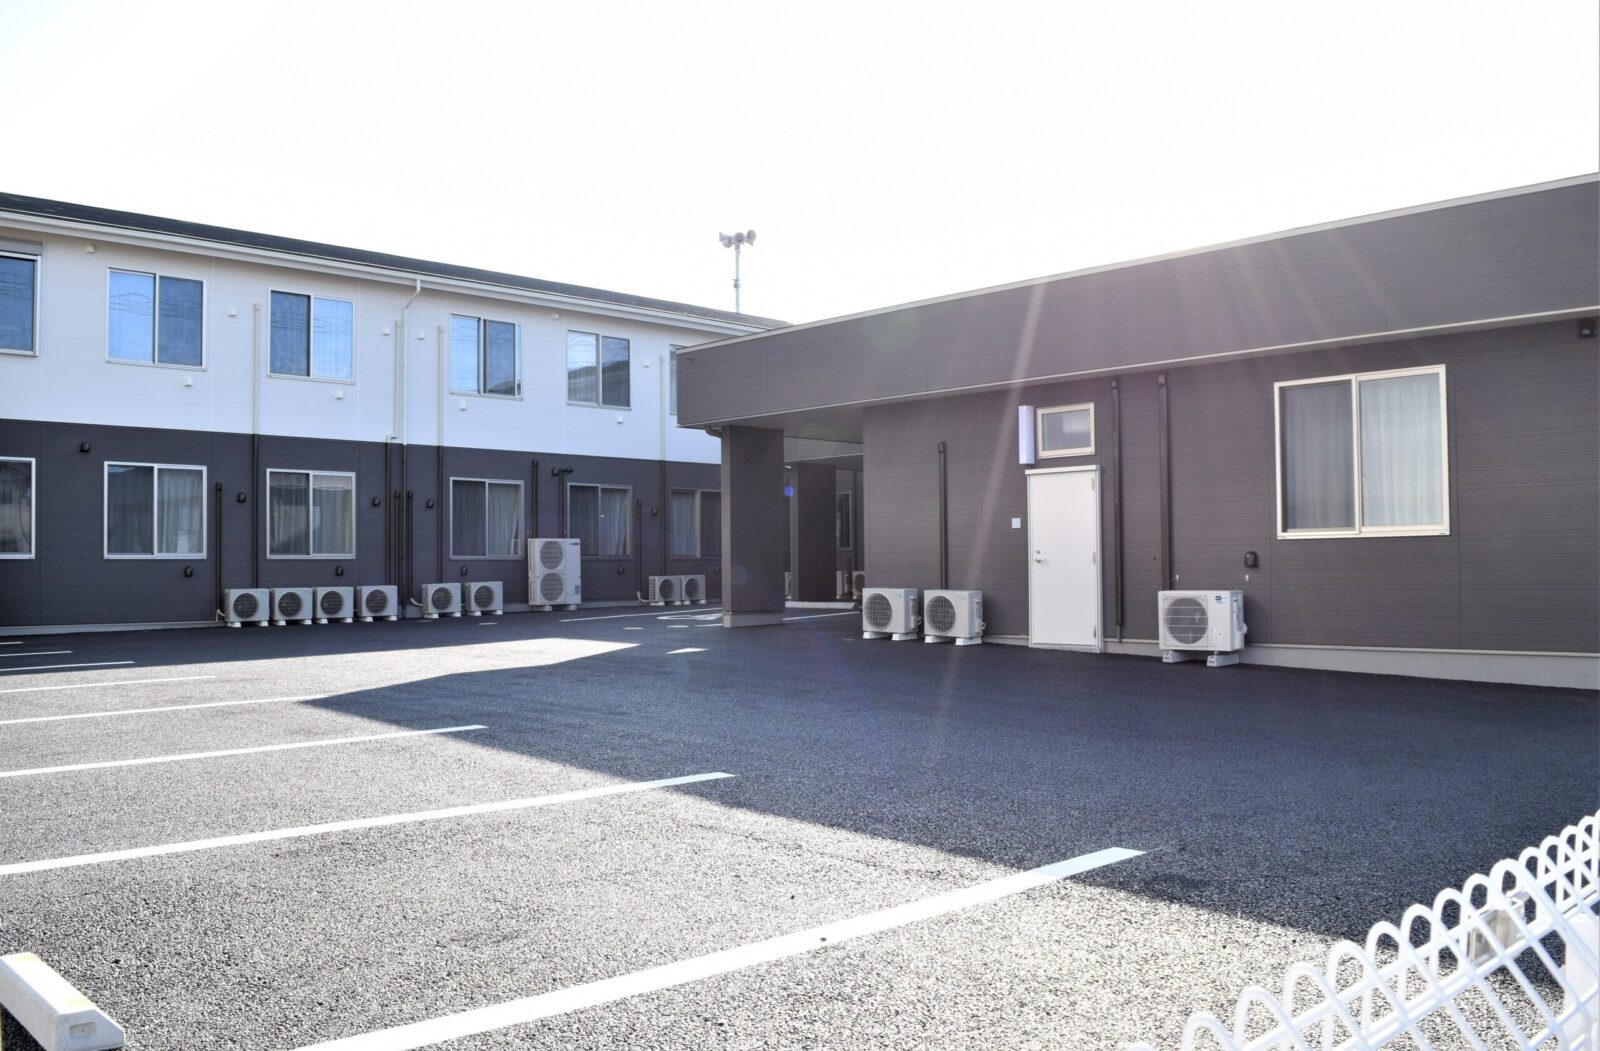 埼玉県では10施設目となる有料老人ホーム「医心館 鶴ヶ島」をオープンしました